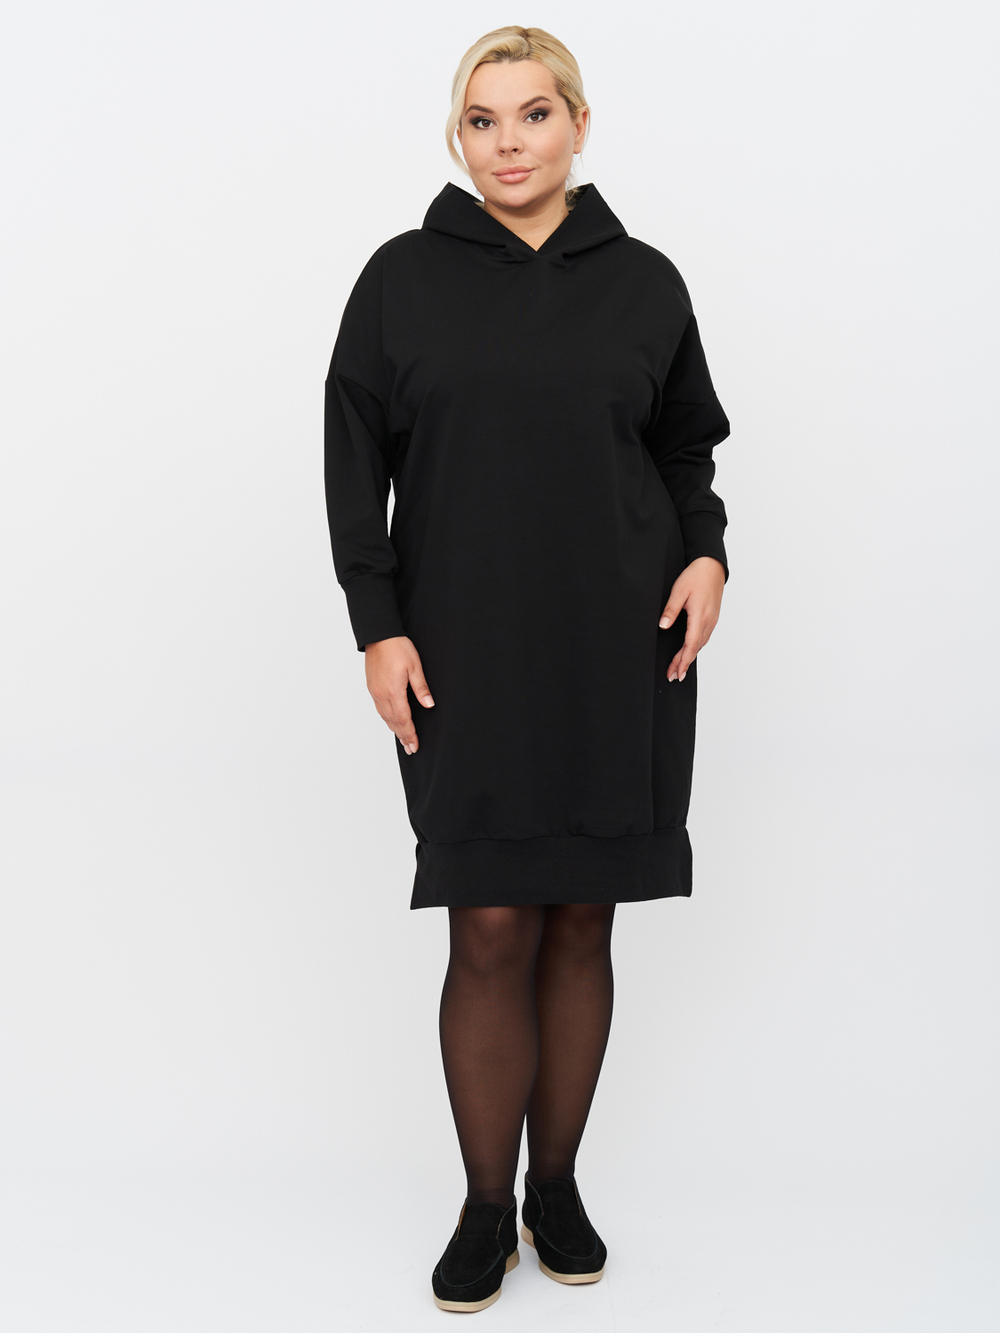 Платье женское ZORY ZPP83102BLK01 черное 64-66 RU